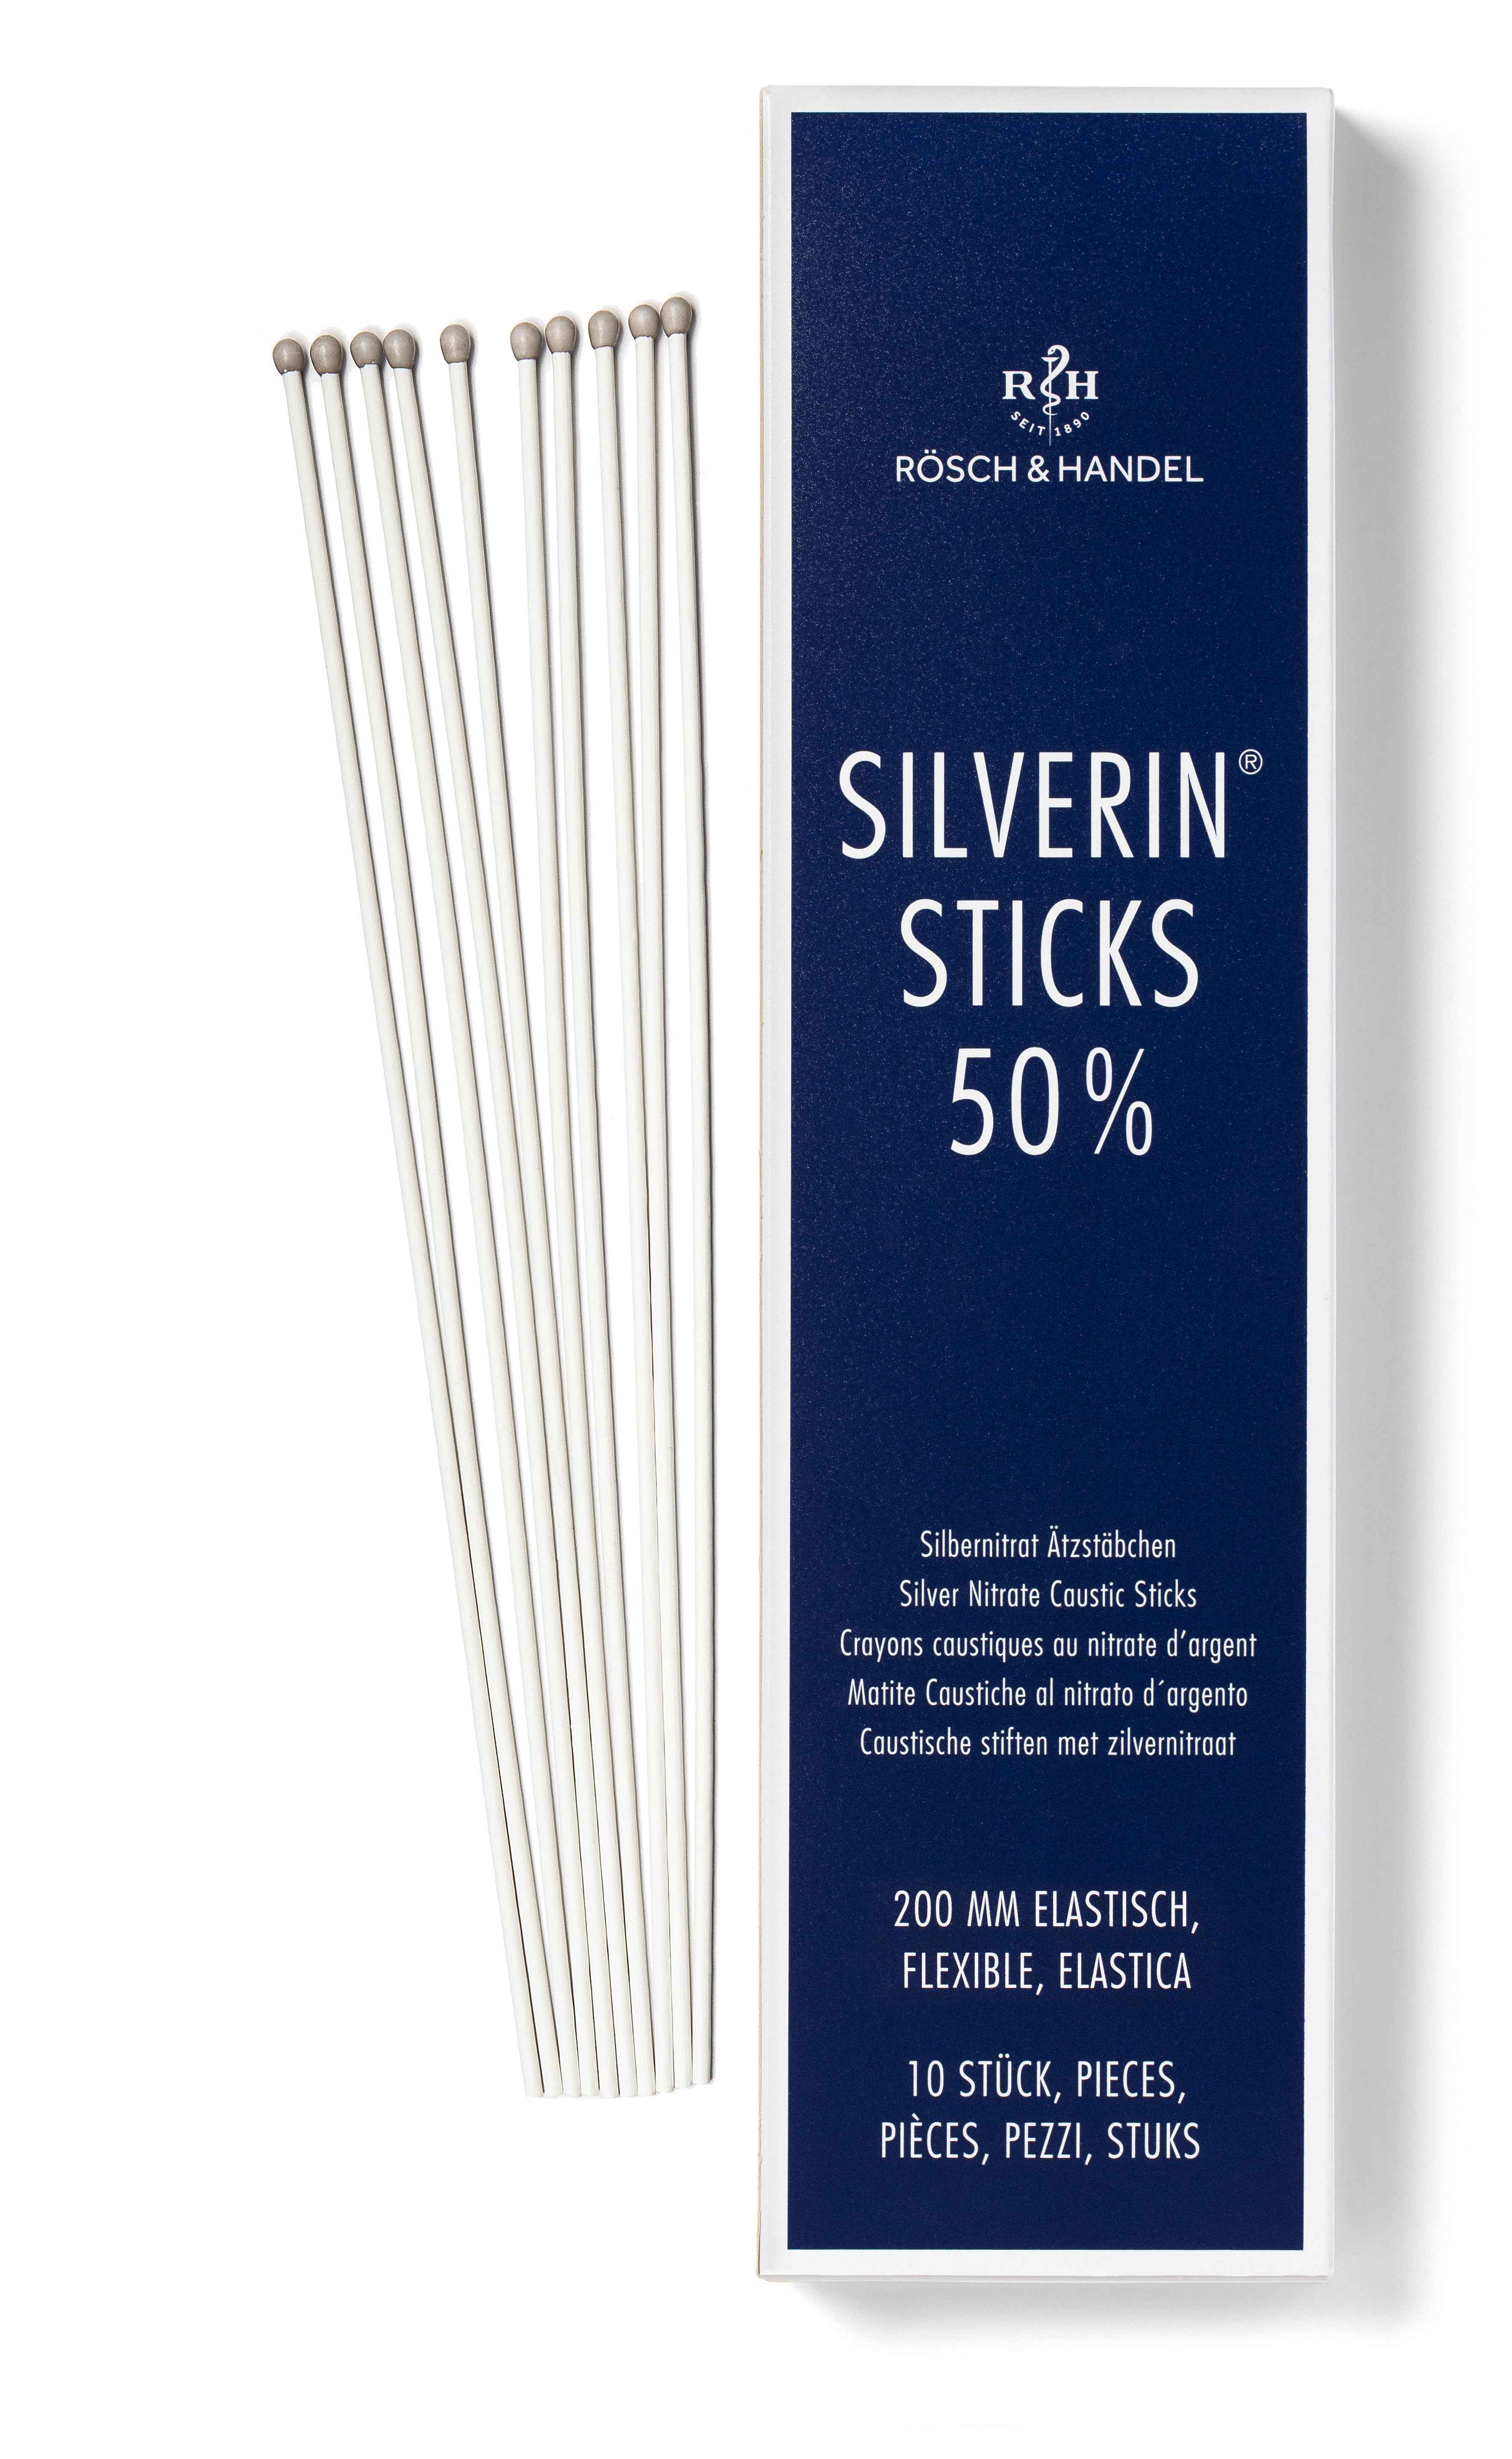 SILVERIN STICKS 50% mit Silbernitrat